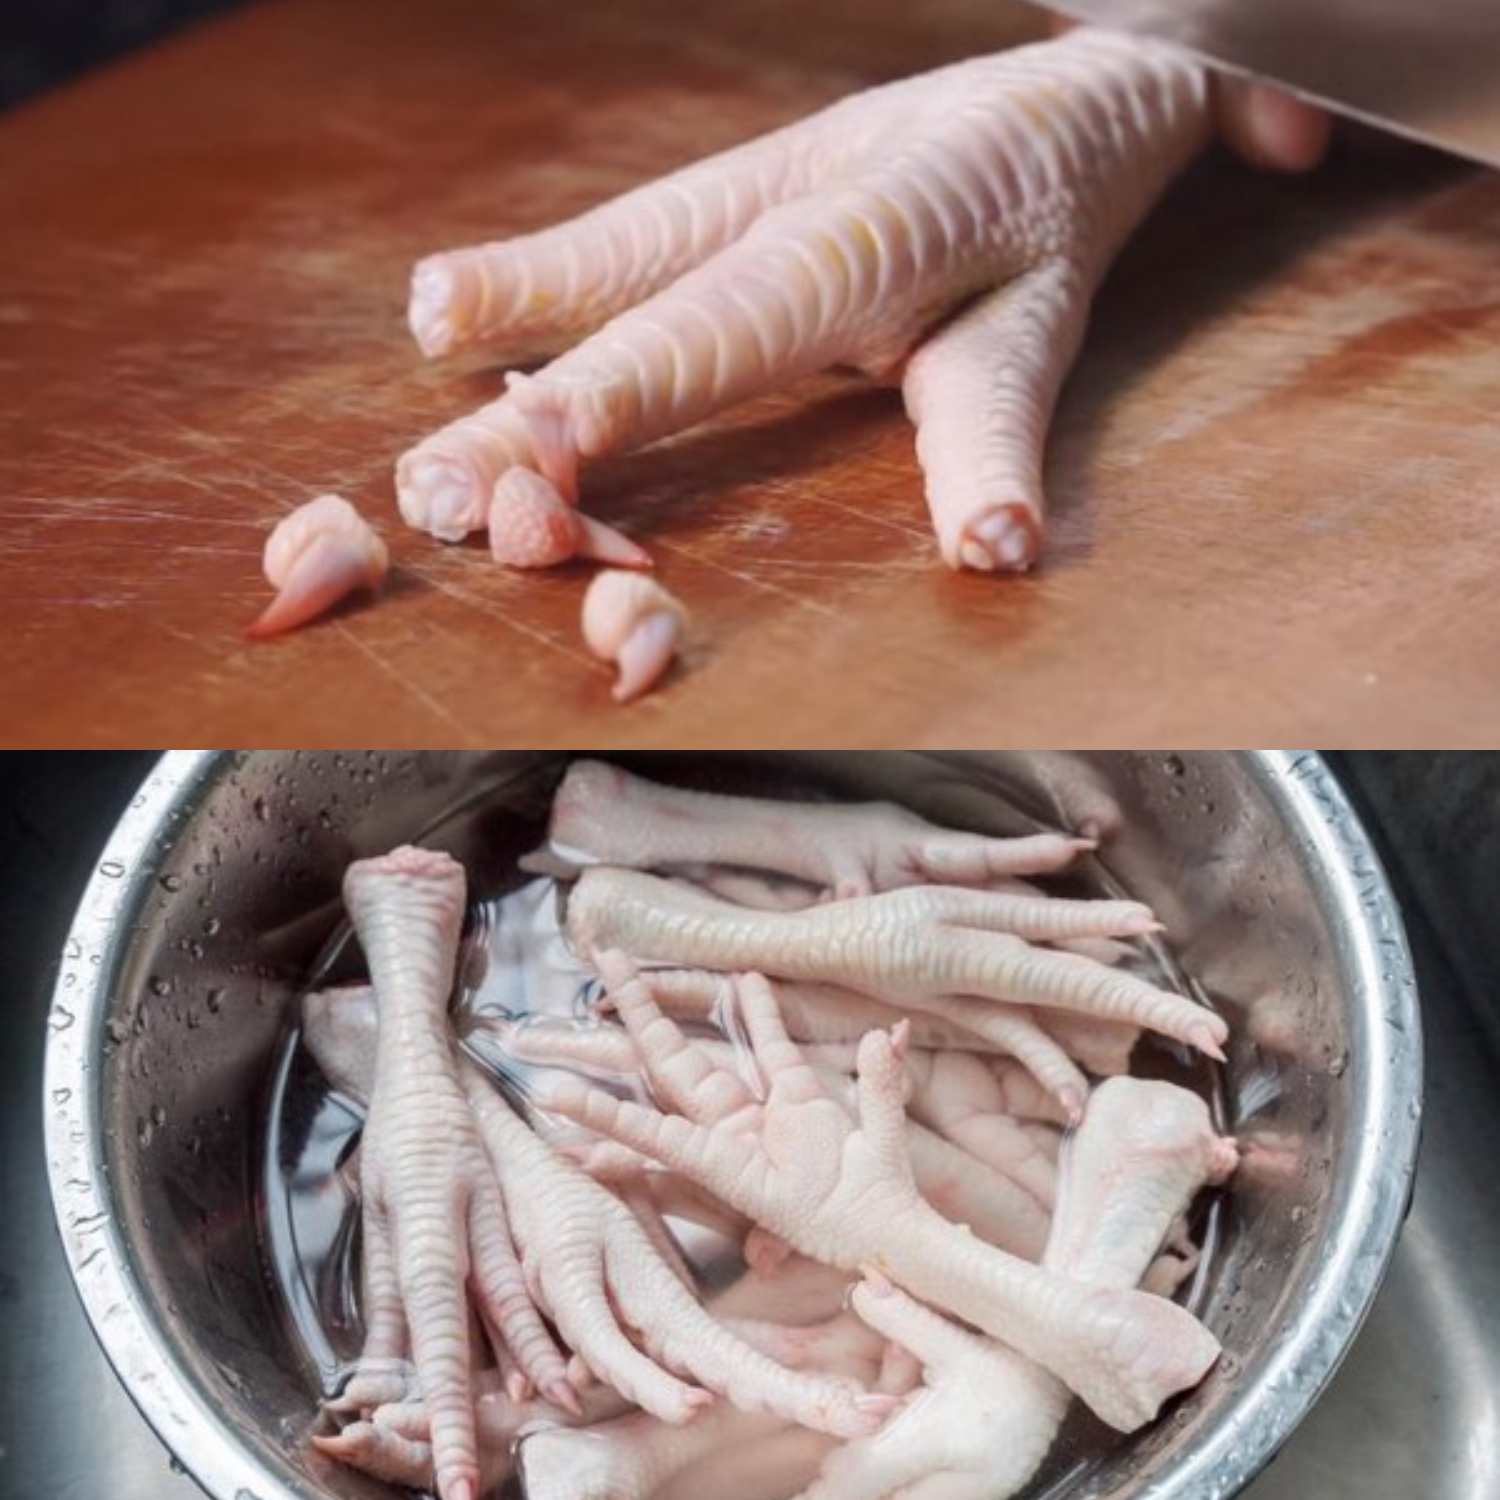 Chân gà phải được rửa và luộc để khử mùi hôi trước khi chế biến